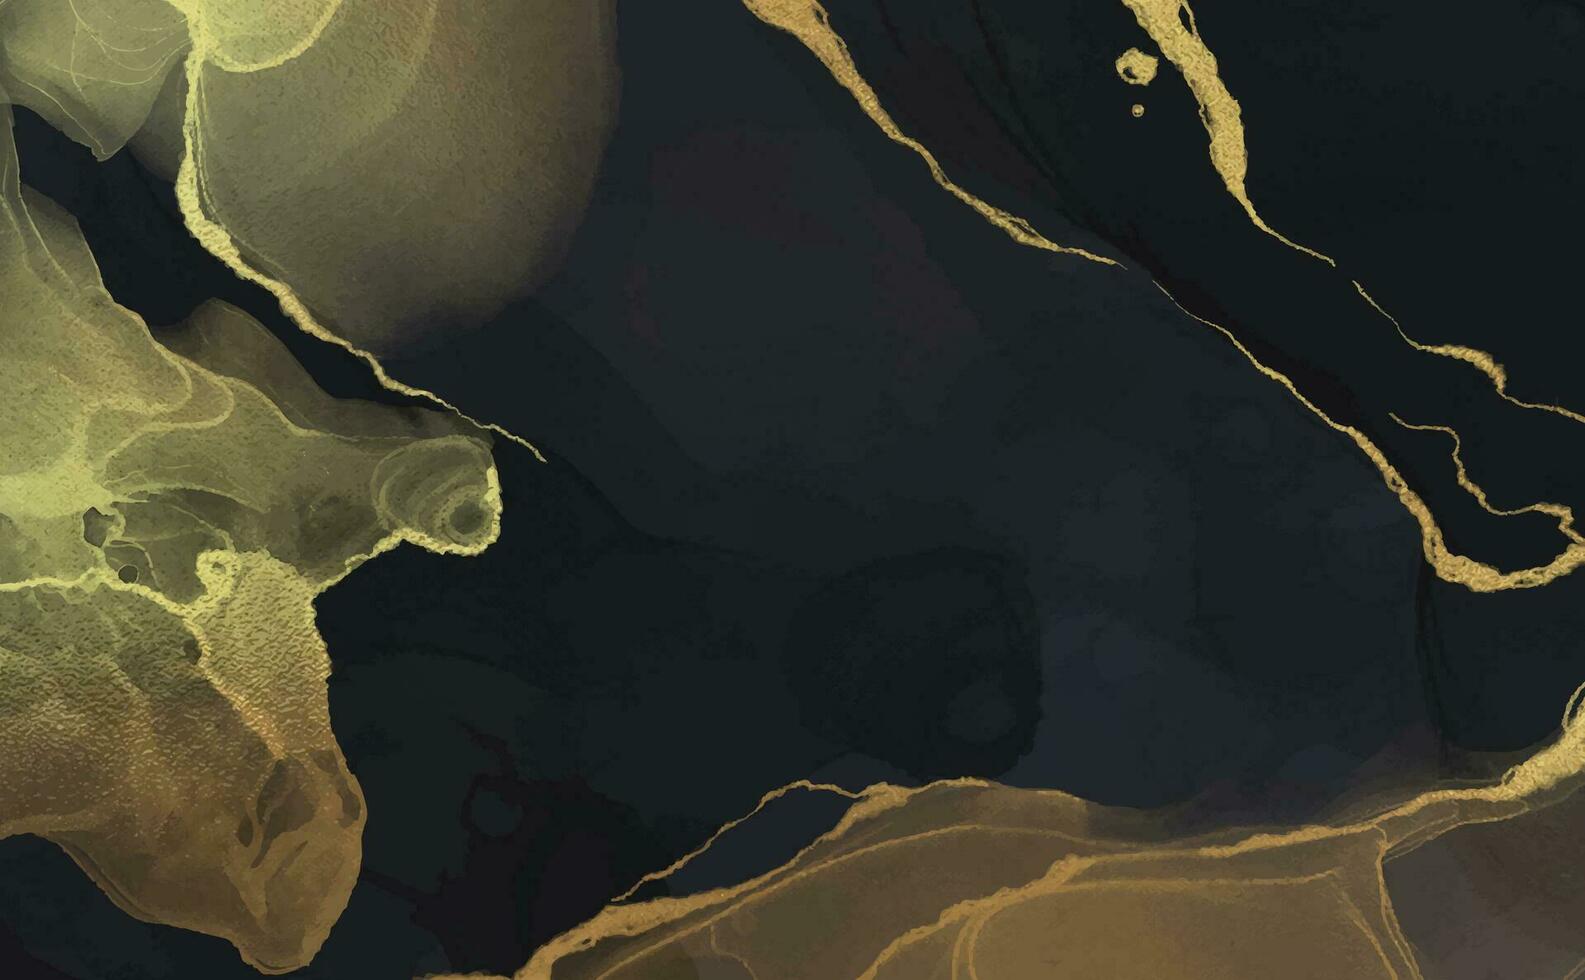 abstrakt Marmor Hintergrund Flüssigkeit Kunst Gemälde Alkohol Tinte Stil mit ein mischen von Schwarz, Gold Farben. schön Strudel Marmor Hintergrund. vektor